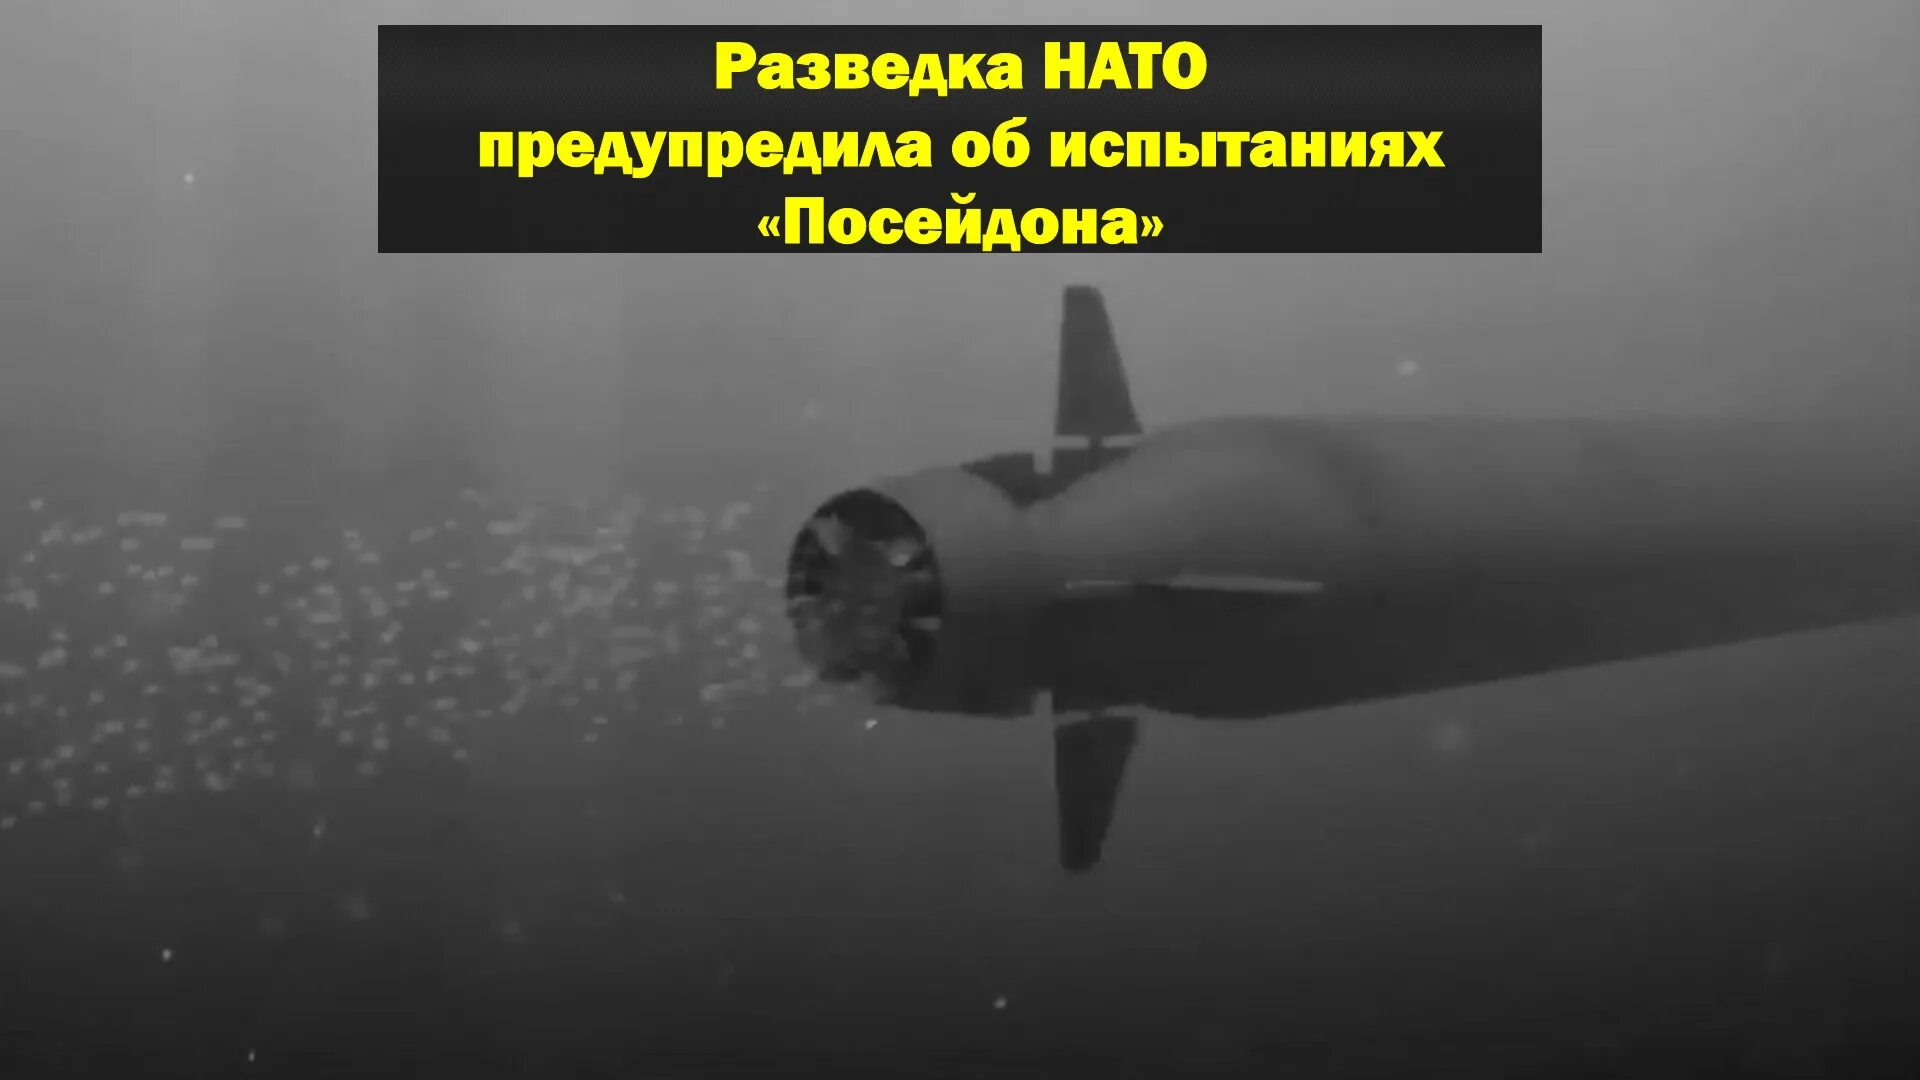 Нато предупреждает. Атомная торпеда Посейдон. Посейдон подводная лодка. Посейдон беспилотный подводный аппарат. Посейдон испытания.